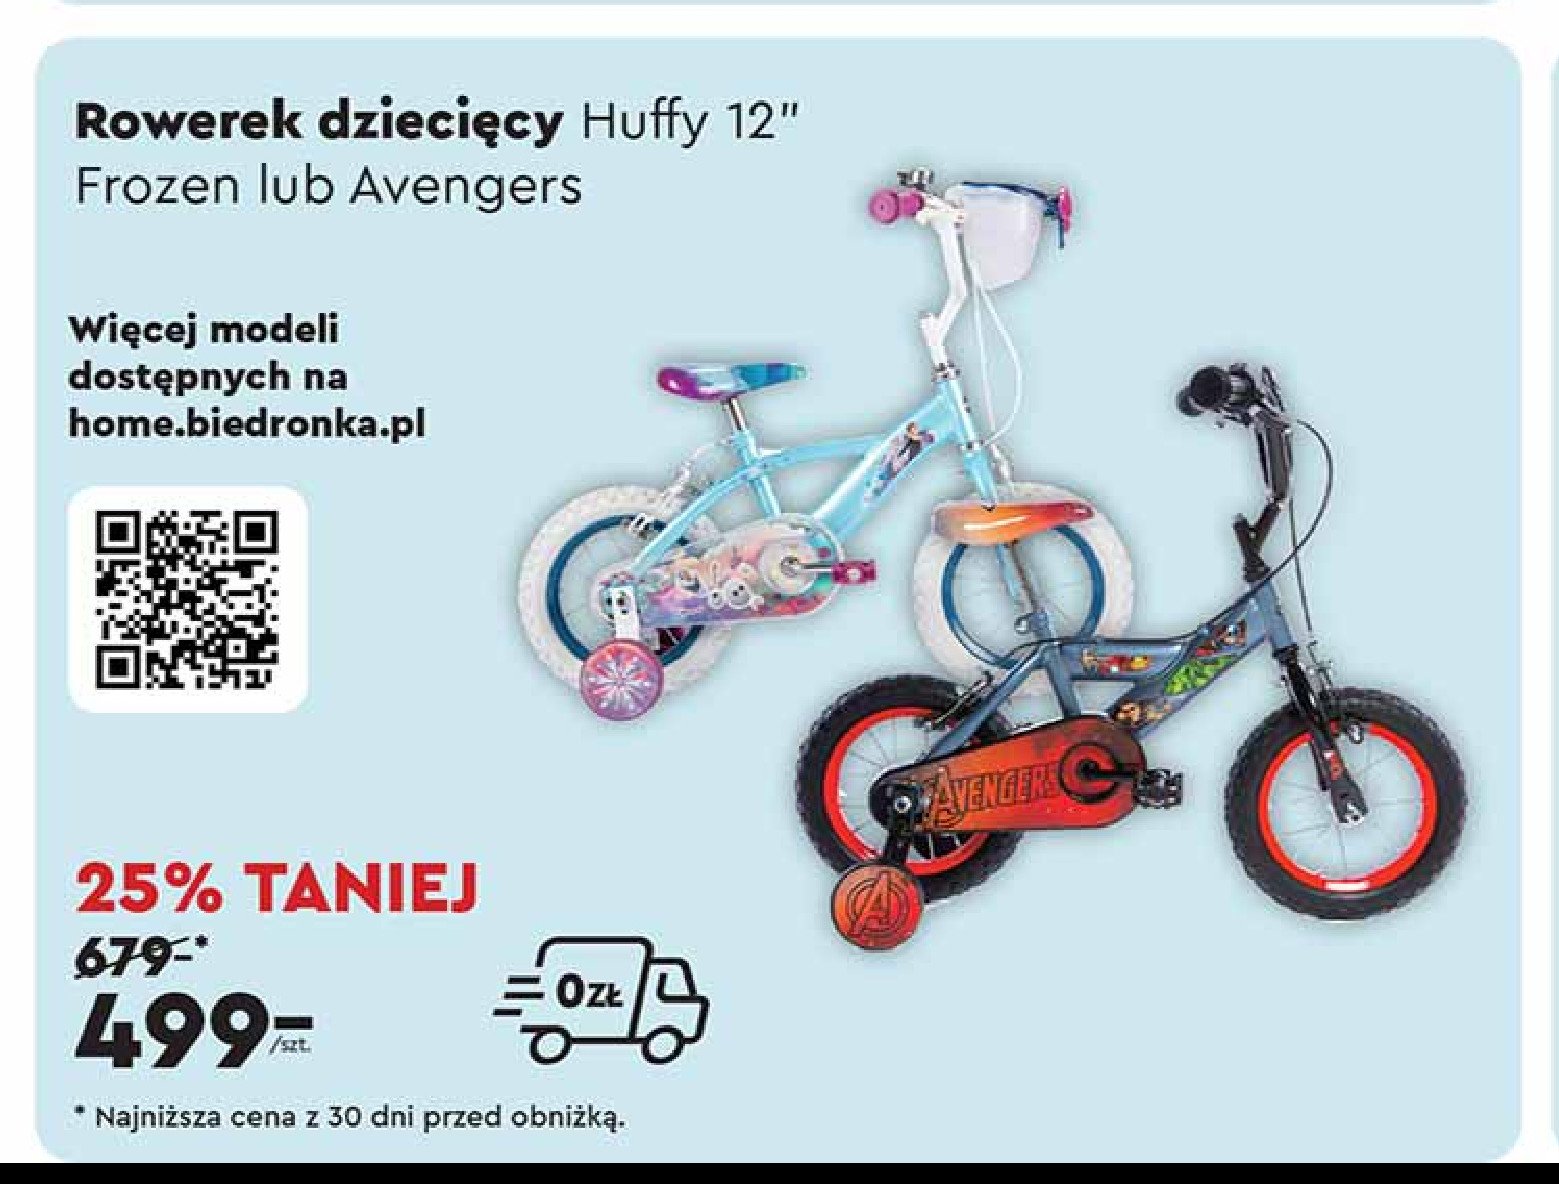 Rower dziecięcy avengers 12" Huffy promocja